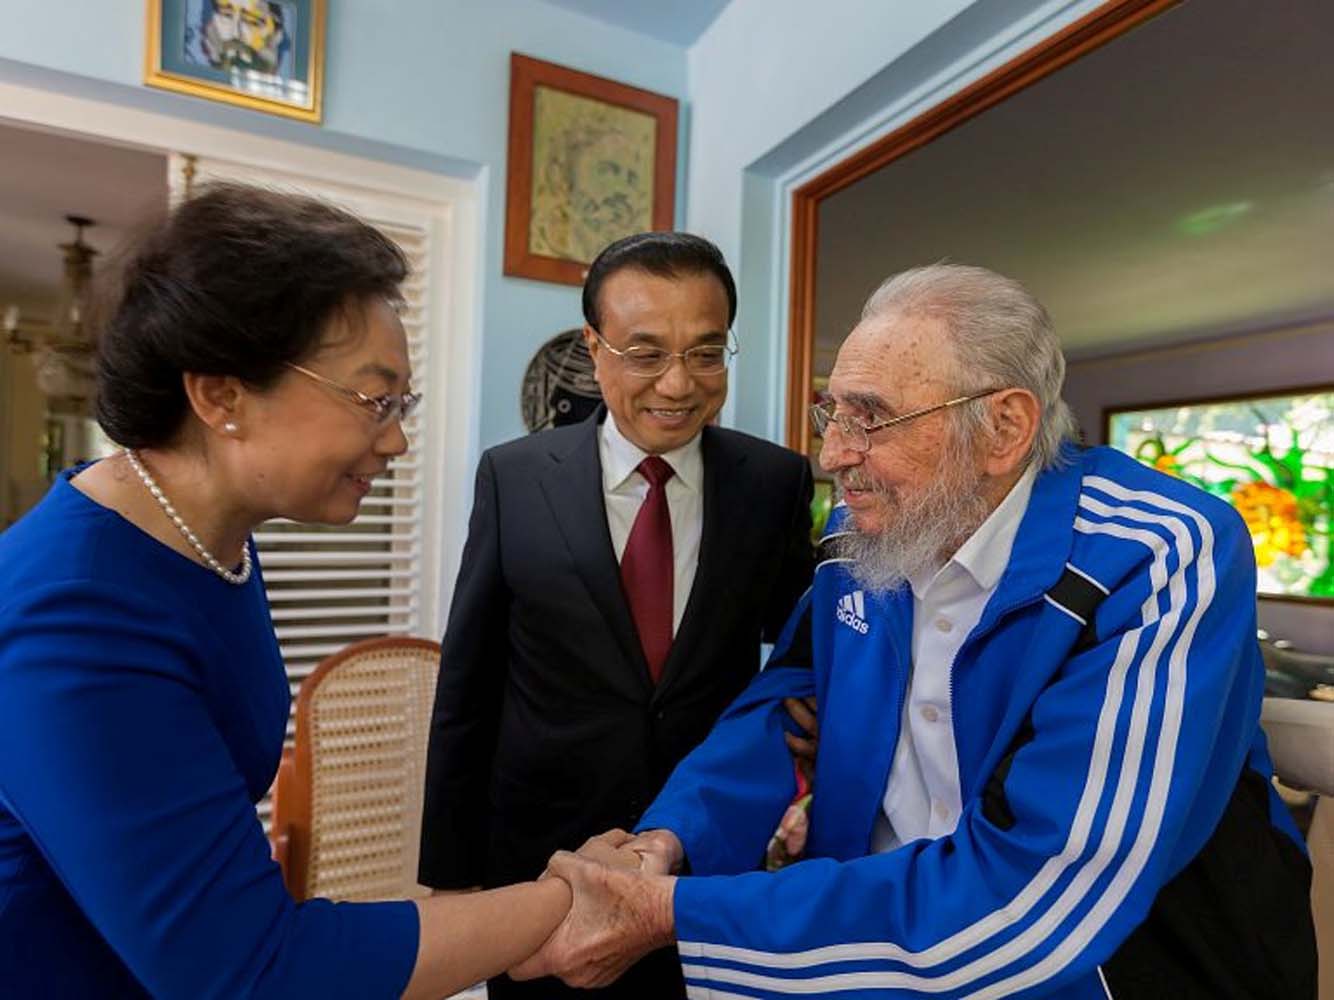 El dictador Fidel Castro aparece más a menudo en público (fotos)